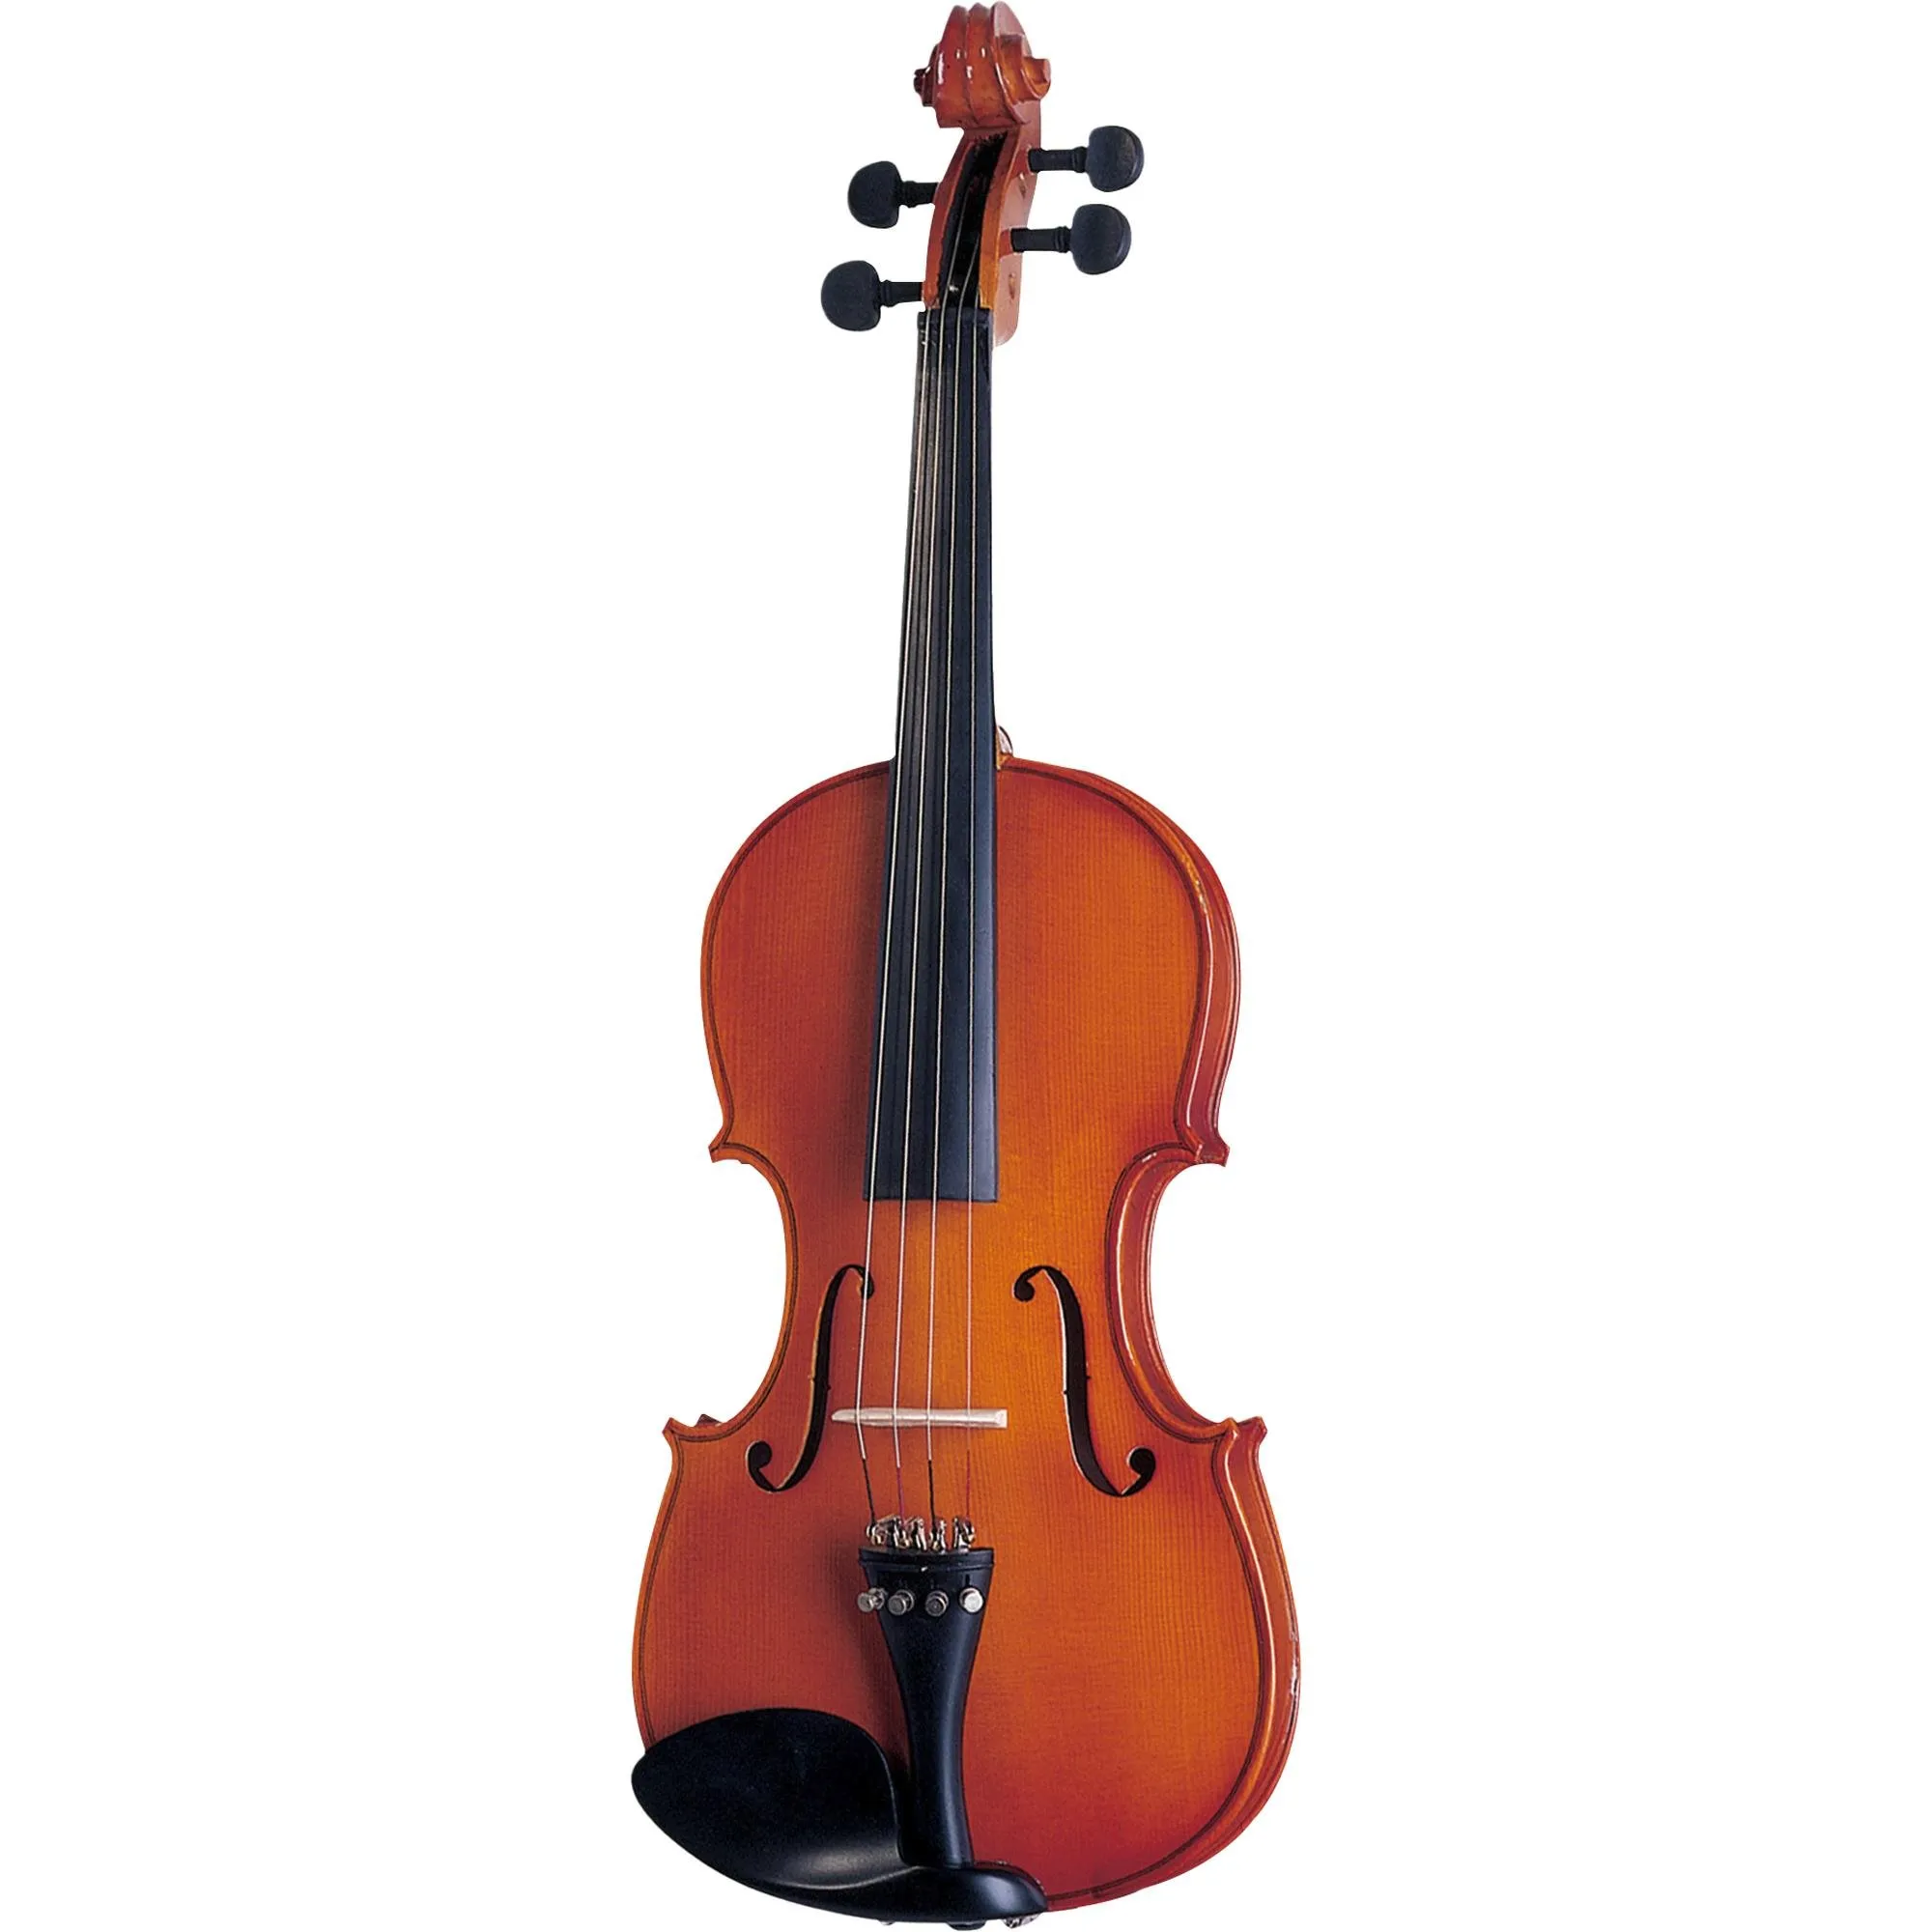 Violino Infantil 1/2 Michael VNM11 por 798,99 à vista no boleto/pix ou parcele em até 10x sem juros. Compre na loja Mundomax!